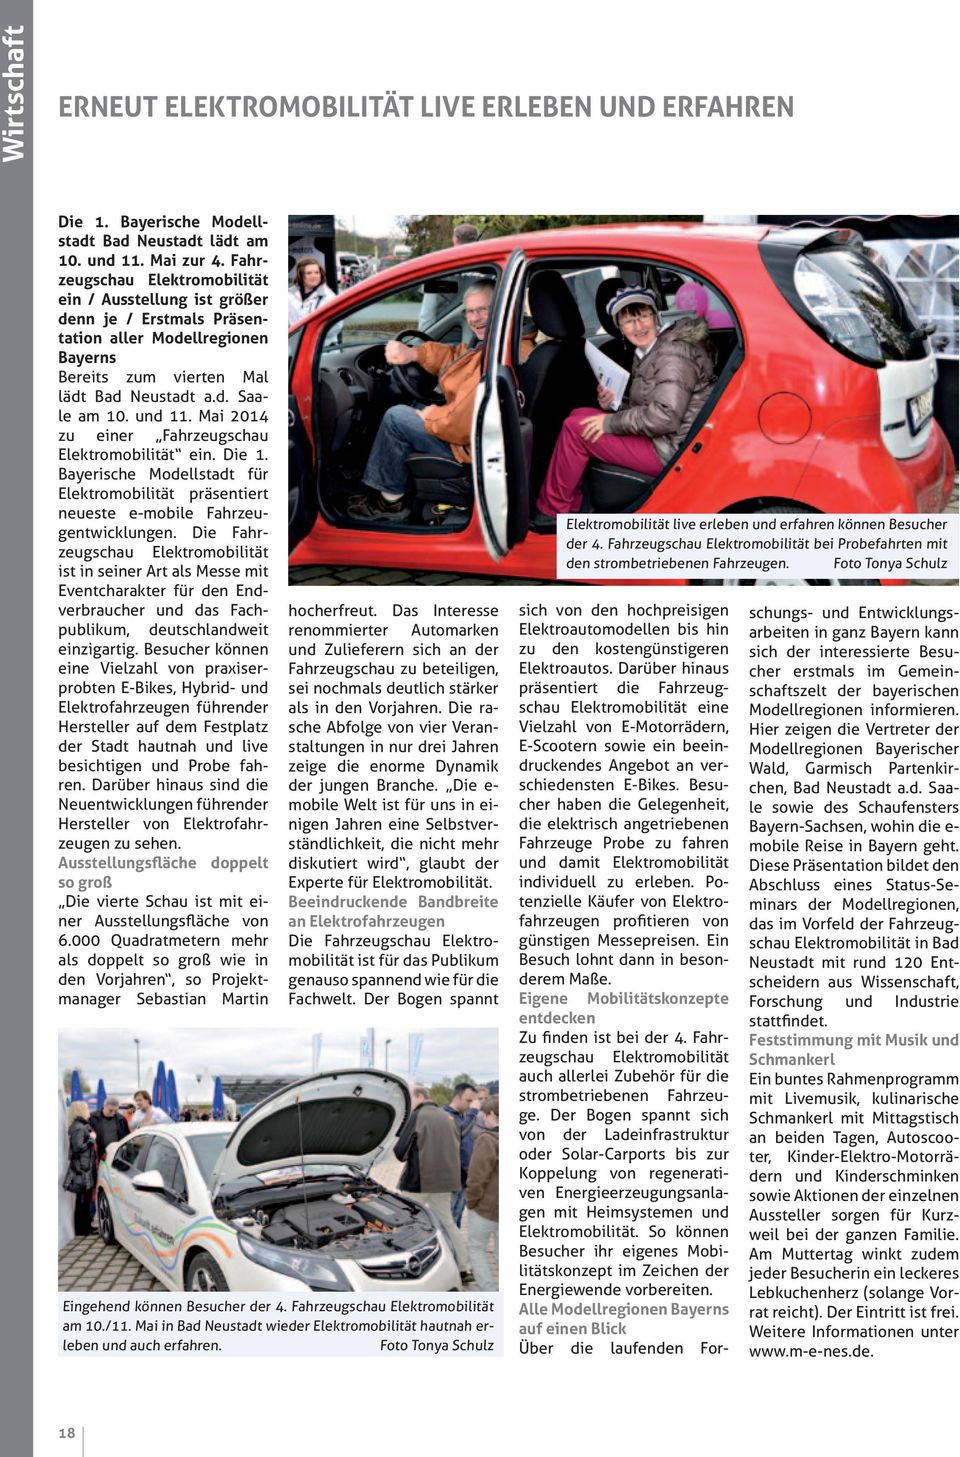 Mai 2014 zu einer Fahrzeugschau Elektromobilität ein. Die 1. Bayerische Modellstadt für Elektromobilität präsentiert neueste e-mobile Fahrzeugentwicklungen.